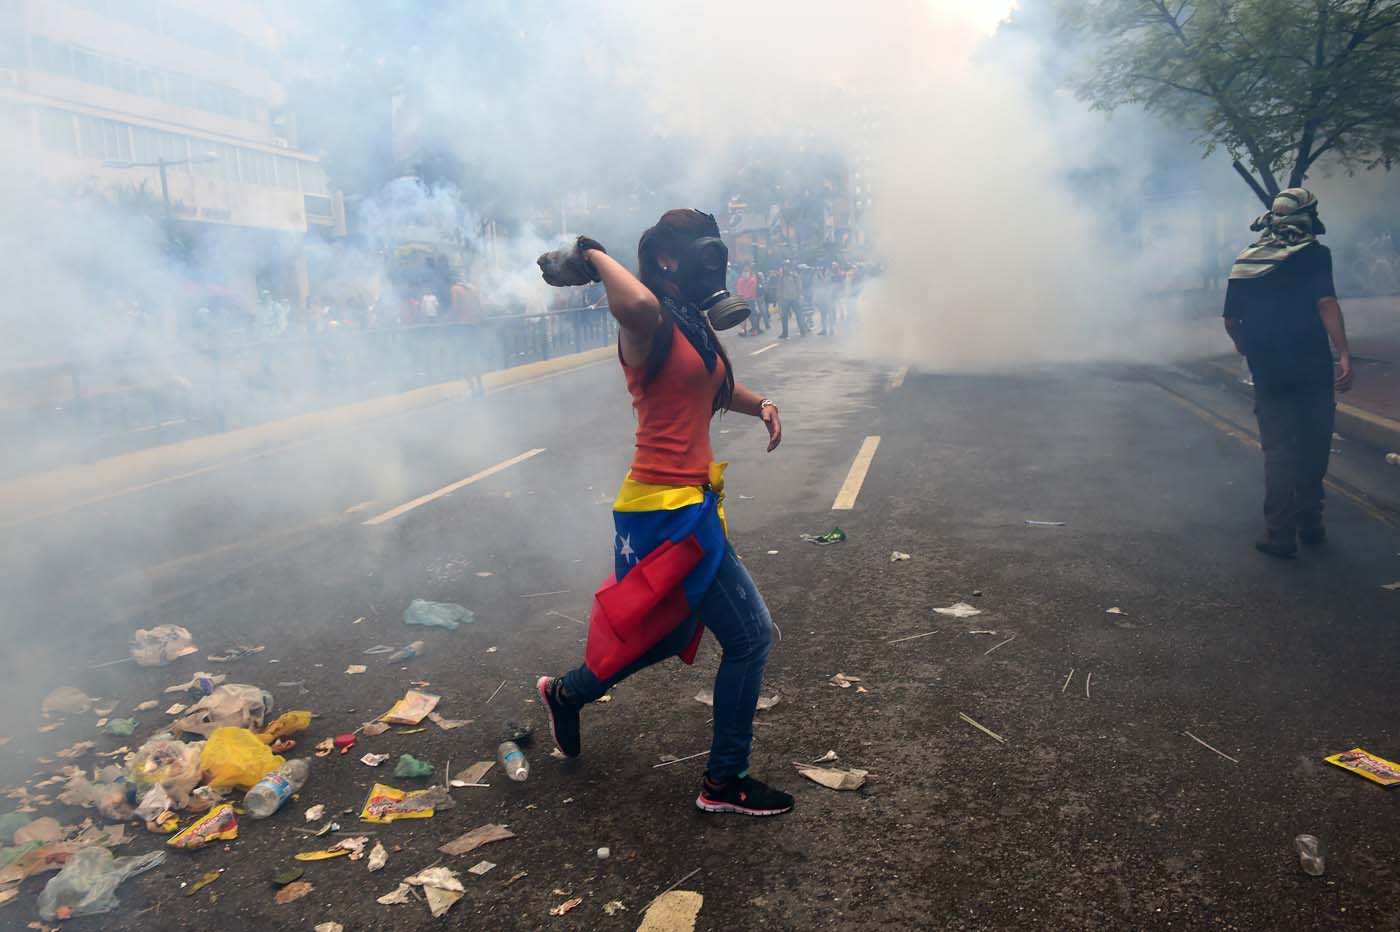 Veinte muertos dejan tres semanas de violentas protestas en Venezuela